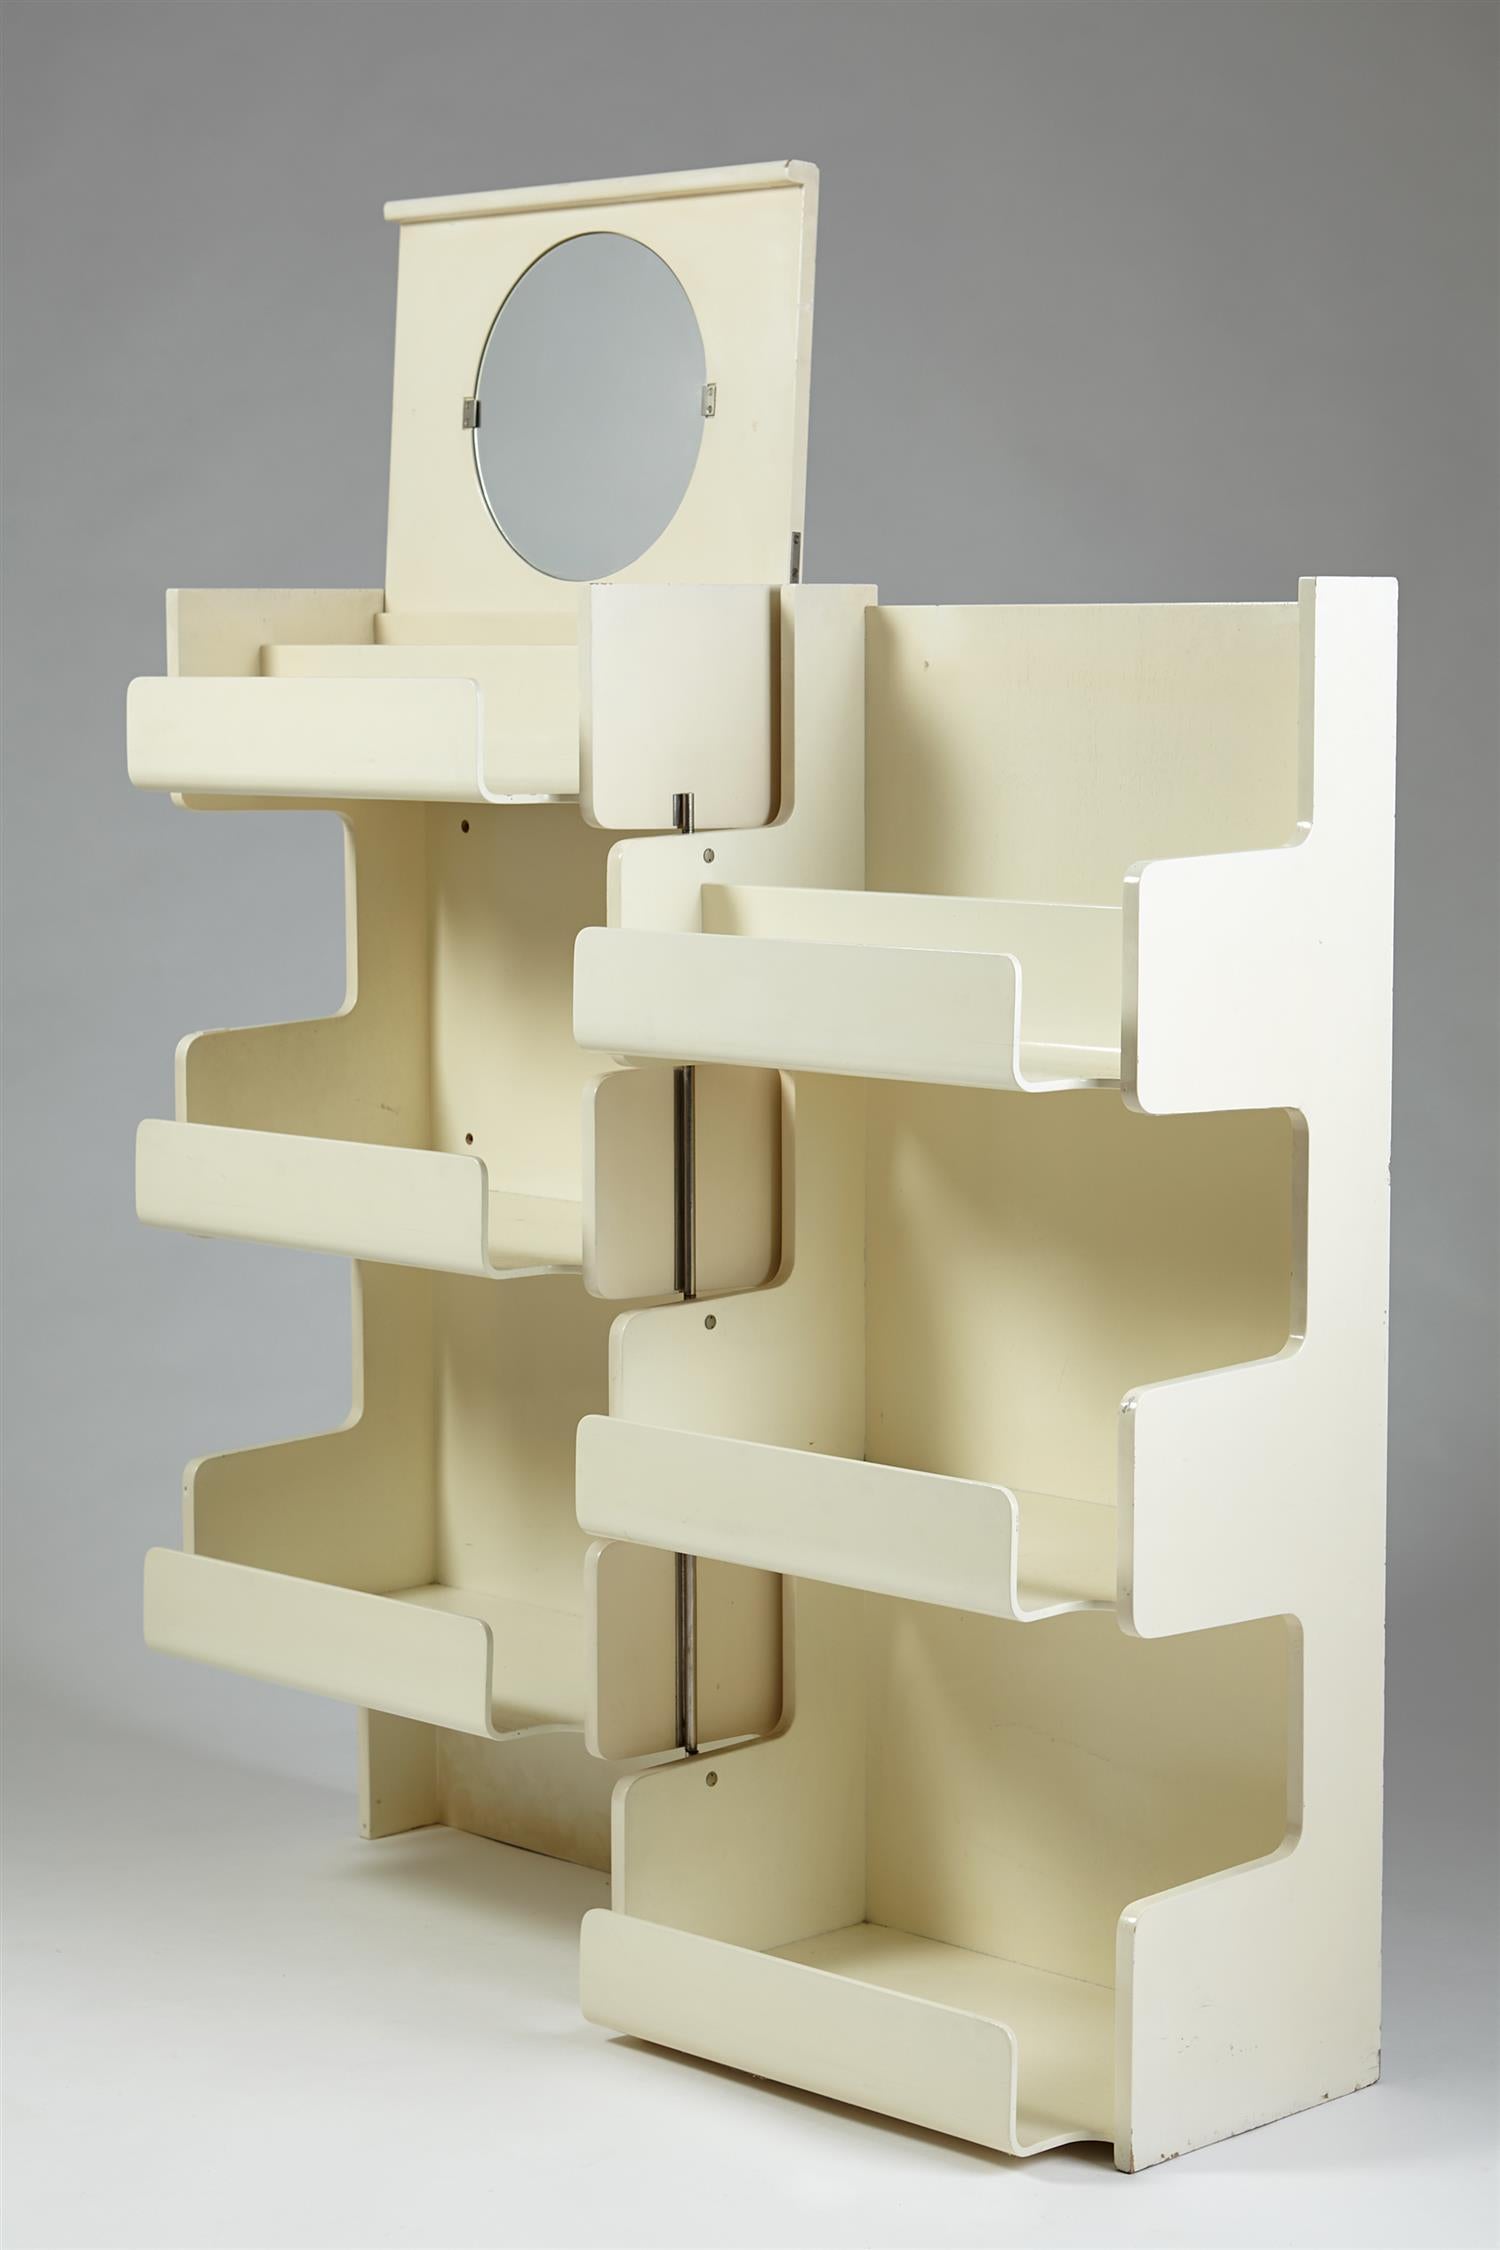 Hängeschrank, entworfen von Lars Larsson und Stig Lönngren für HI-Gruppen, Schweden, 1960er Jahre.

Lackiertes Birkensperrholz und verspiegeltes Glas.

Möglicherweise einzigartig.

Stig Lönngren (1924-2022) erhielt 1946 seinen Abschluss als